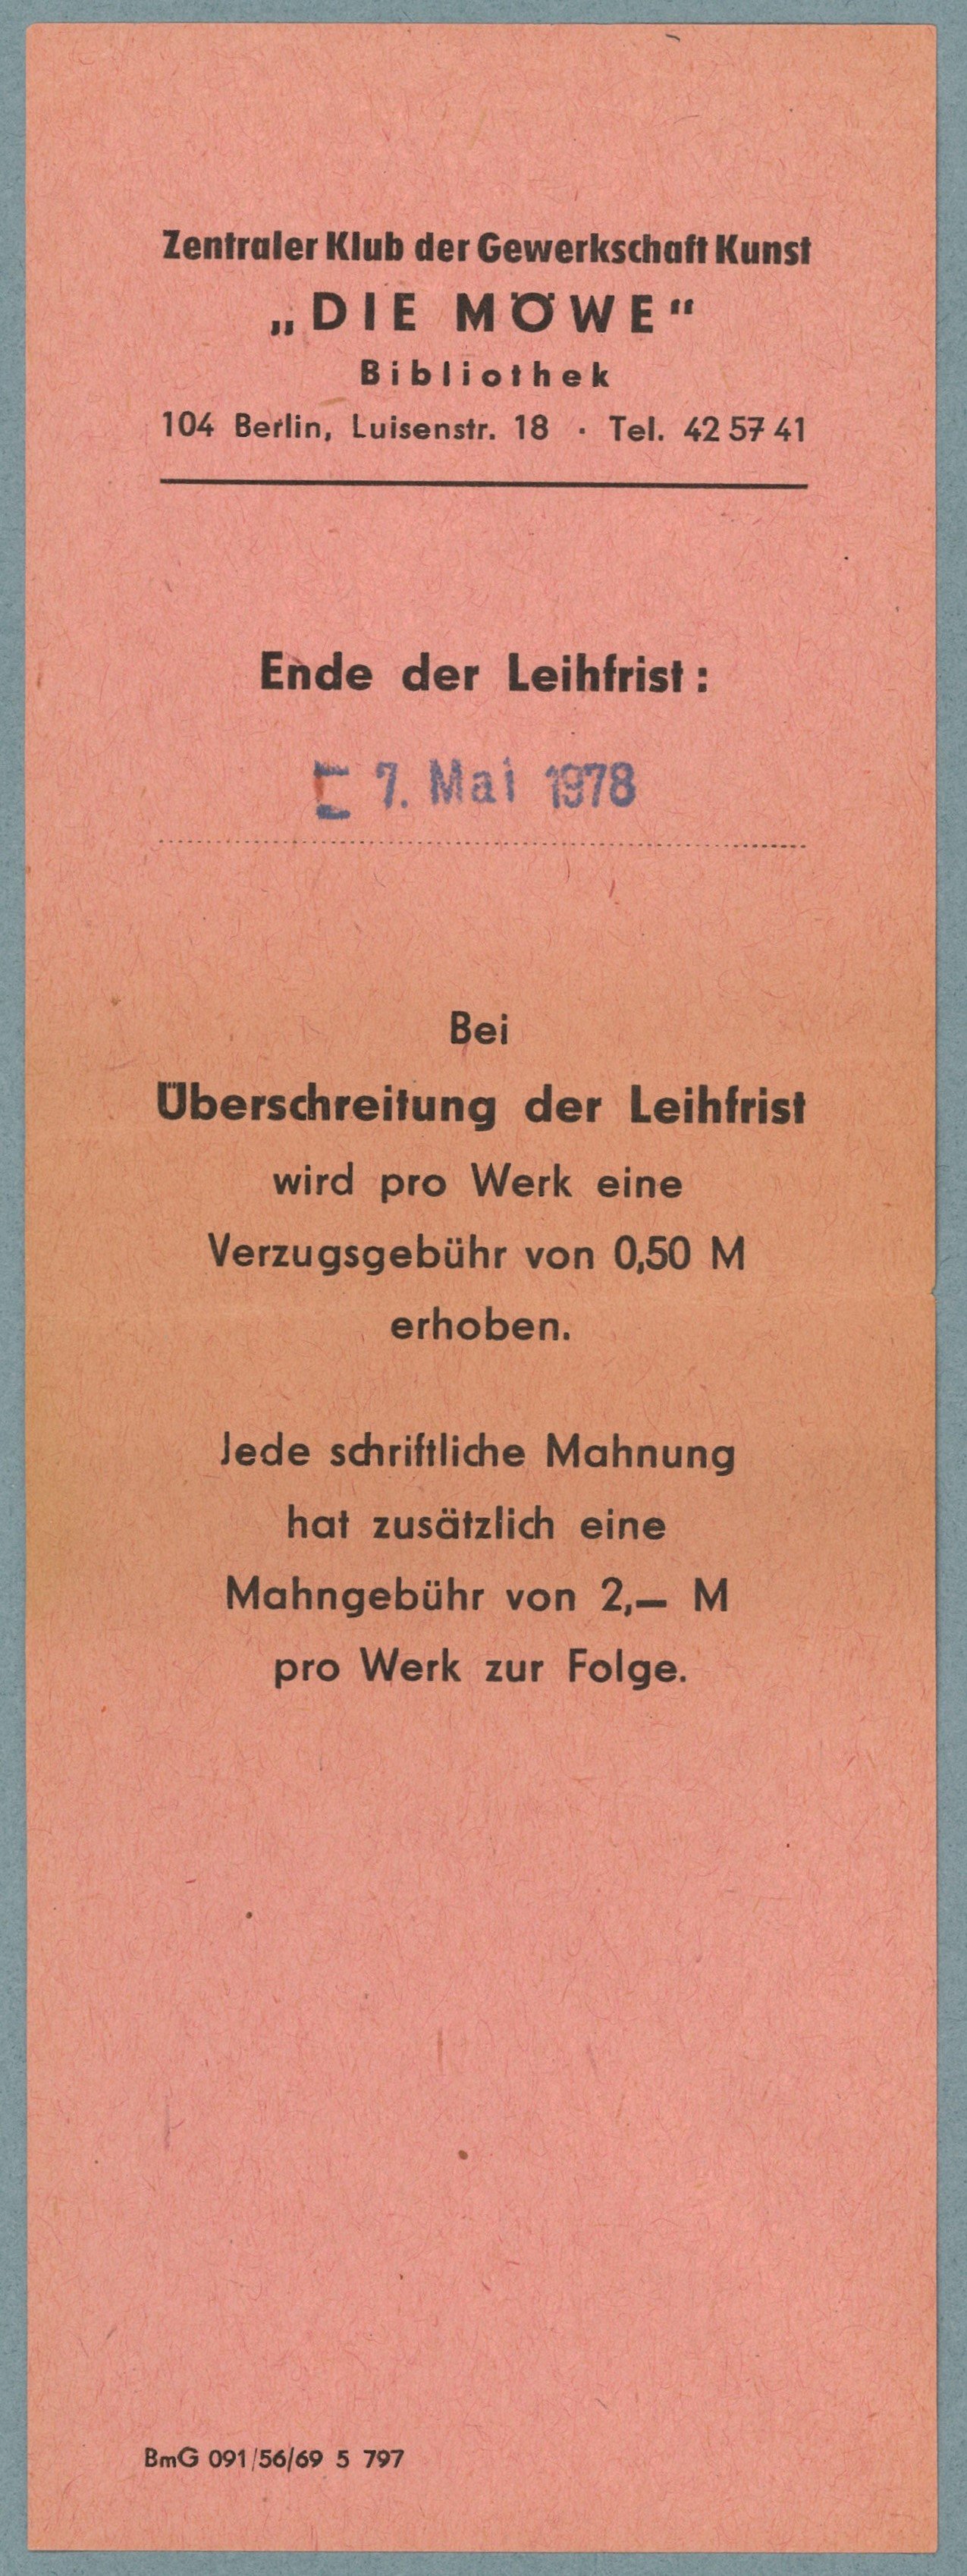 Berlin, Zentraler Klub der Gewerkschaft Kunst "Die Möwe", Bibliothek: Leihzettel (Landesgeschichtliche Vereinigung für die Mark Brandenburg e.V., Archiv CC BY)